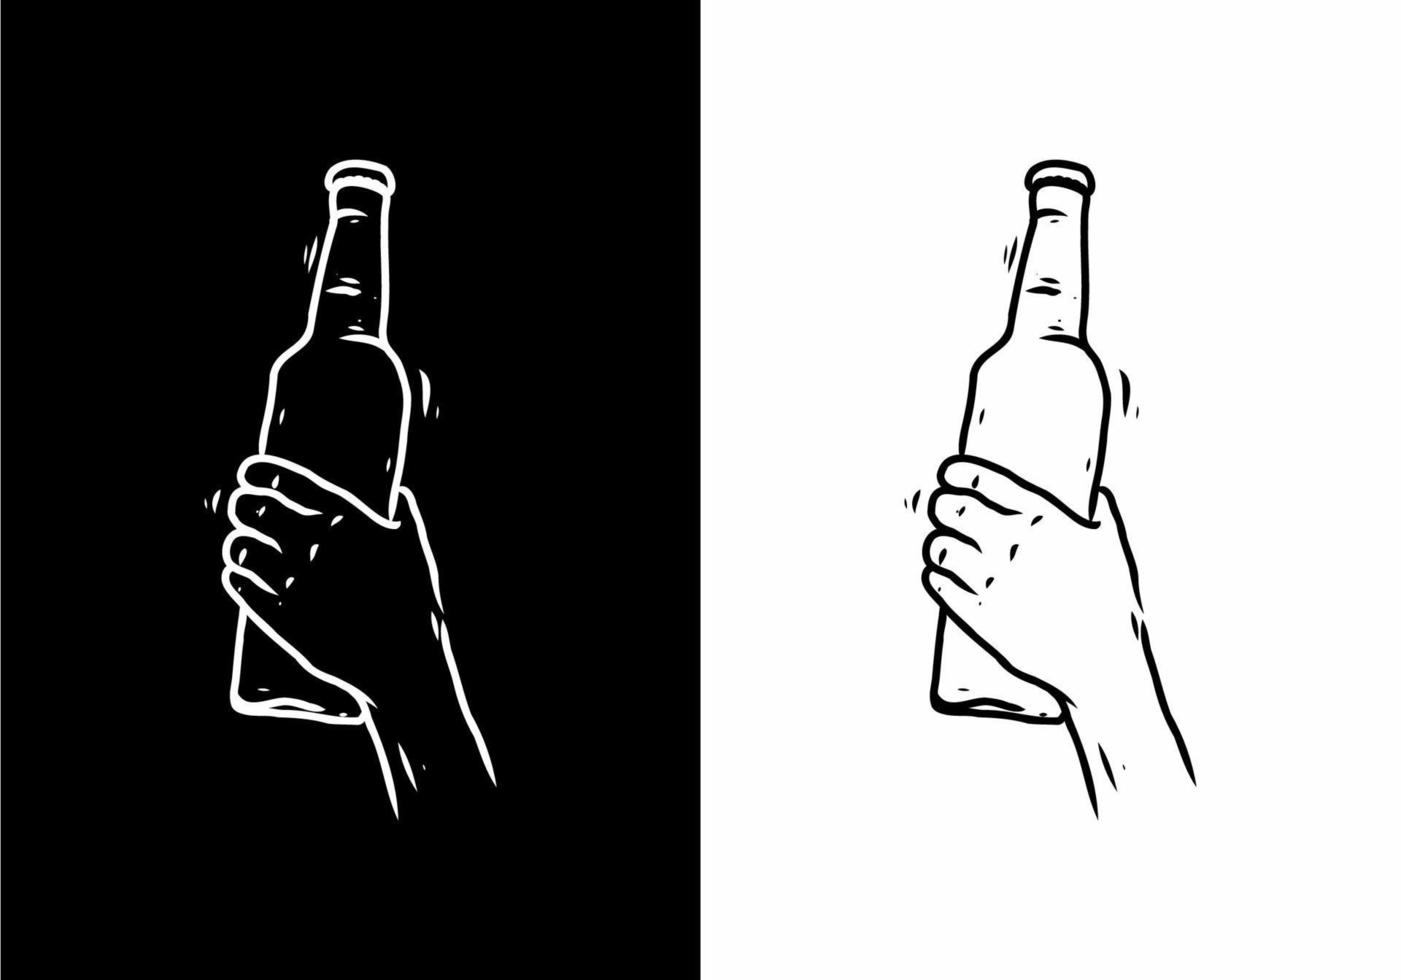 svart och vit linjekonstteckning av hand som håller flaska vektor